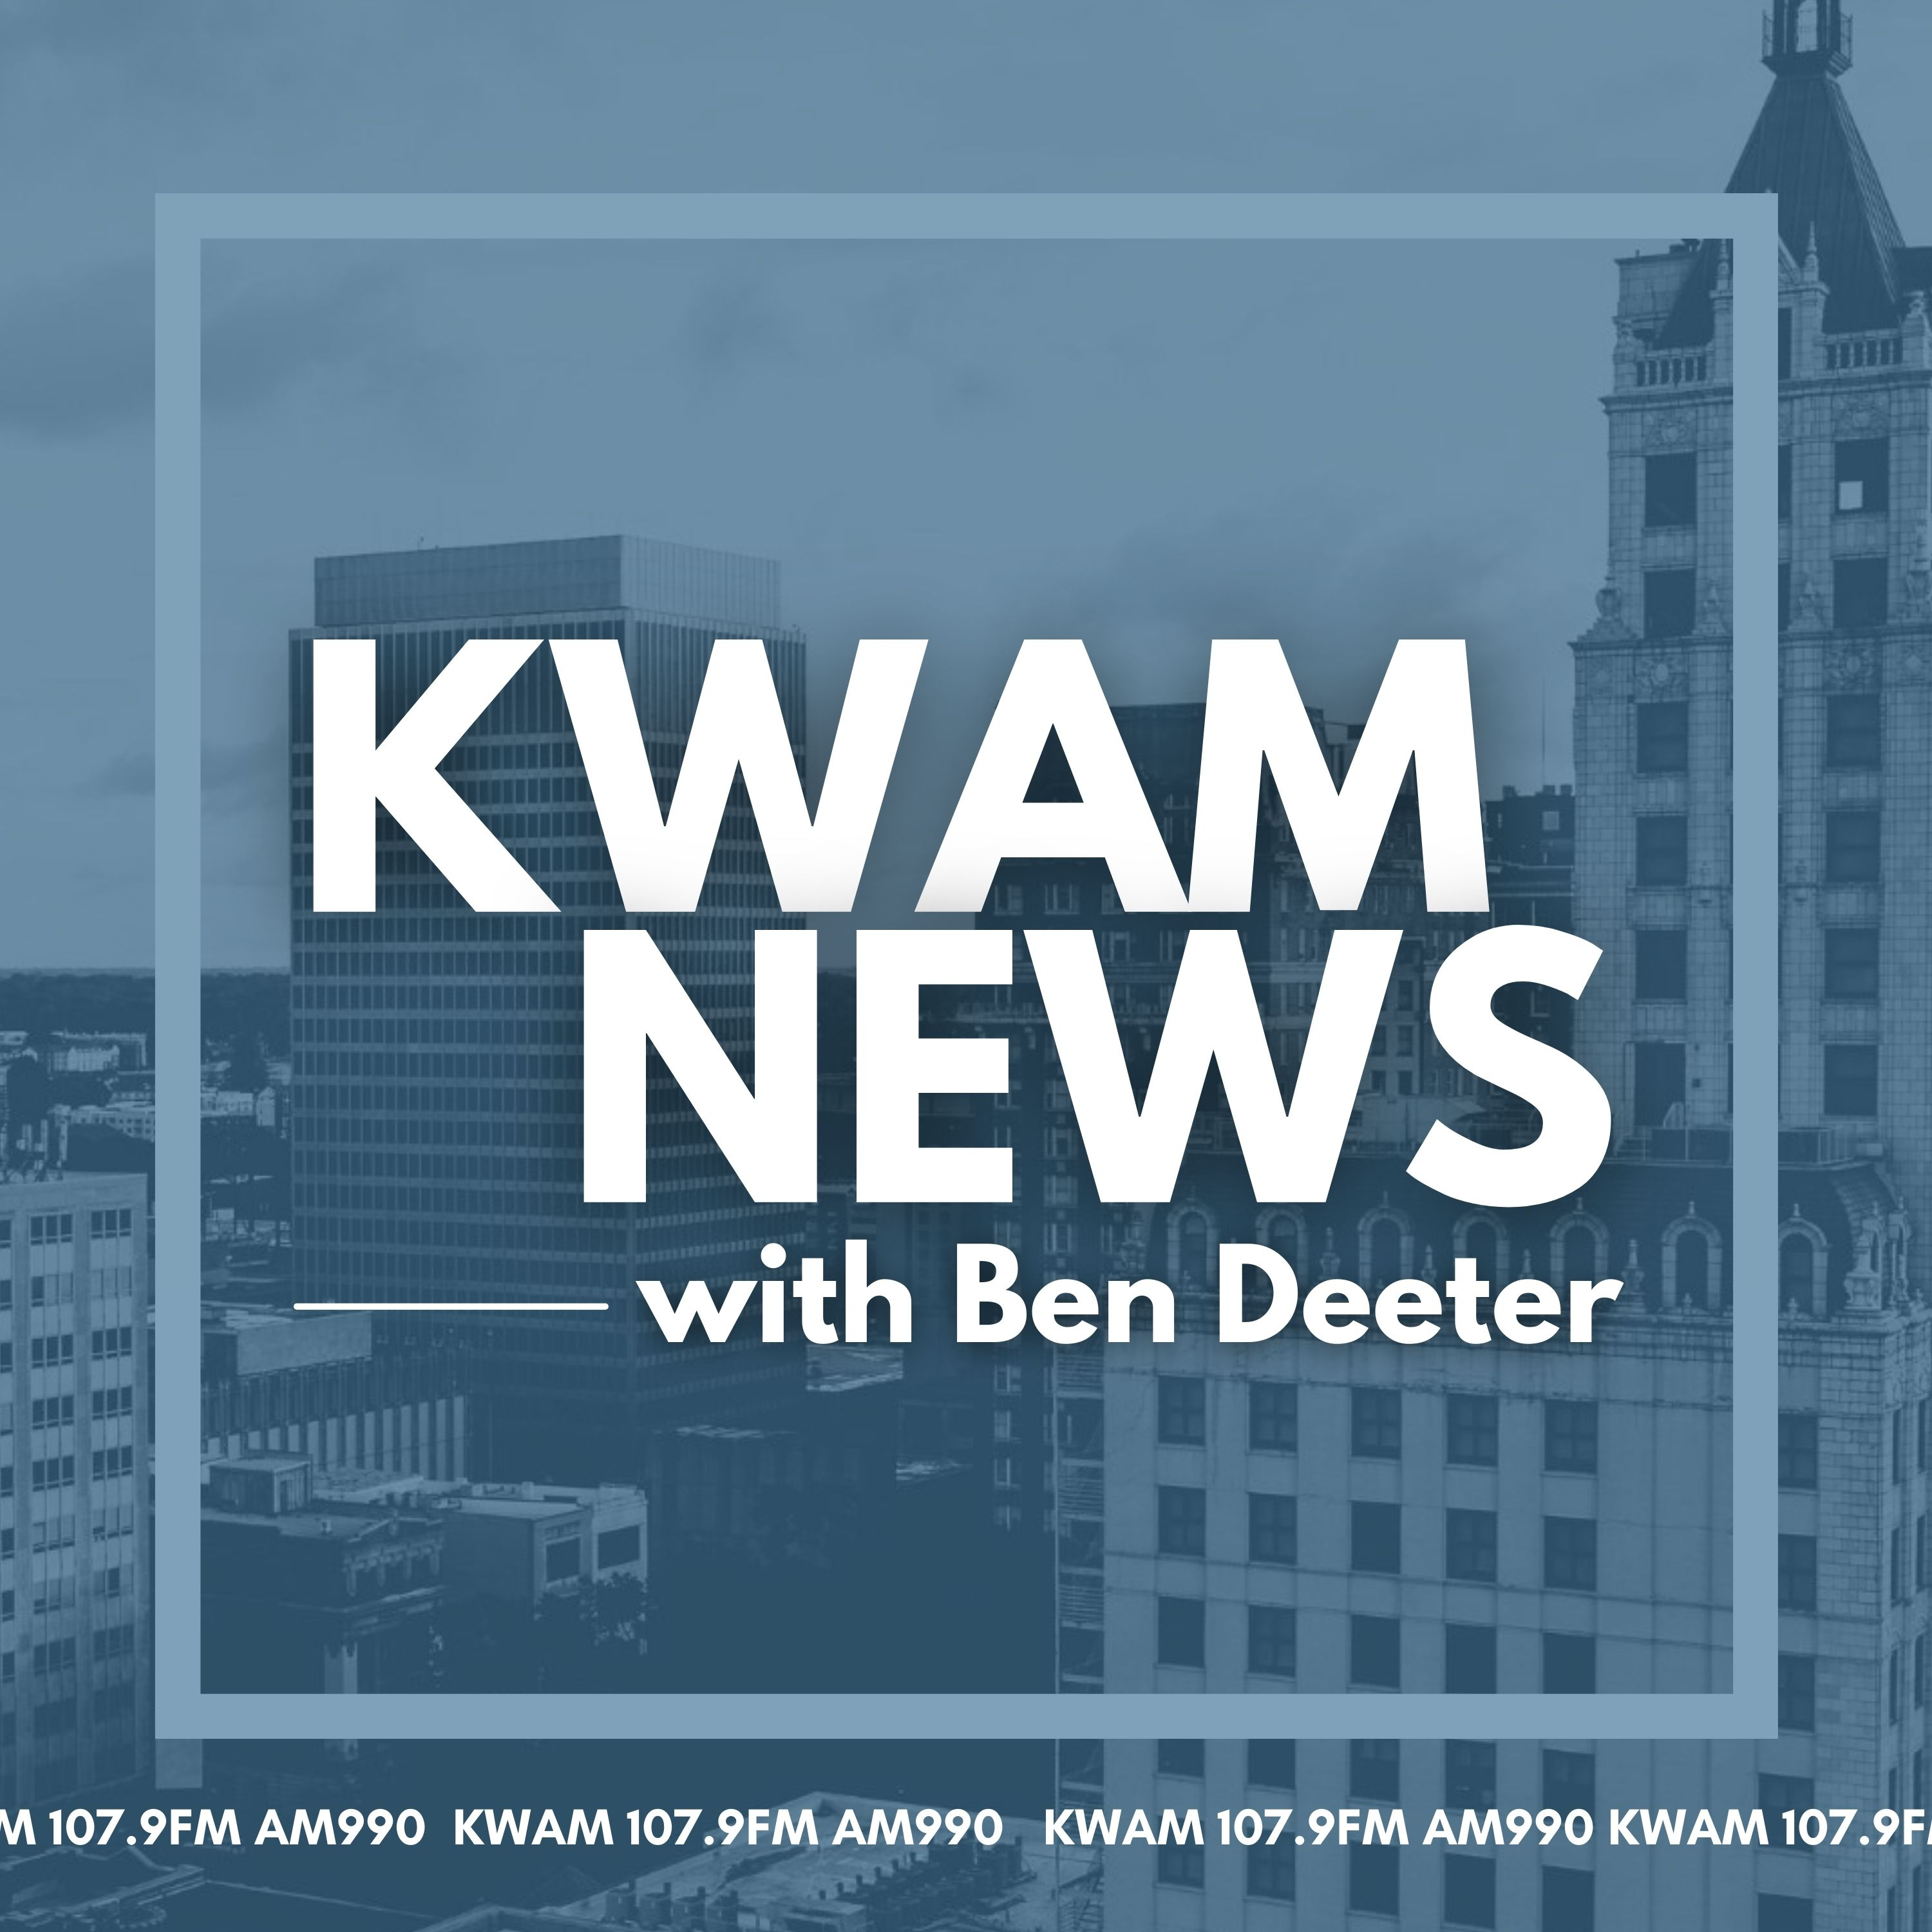 KWAM News with Ben Deeter